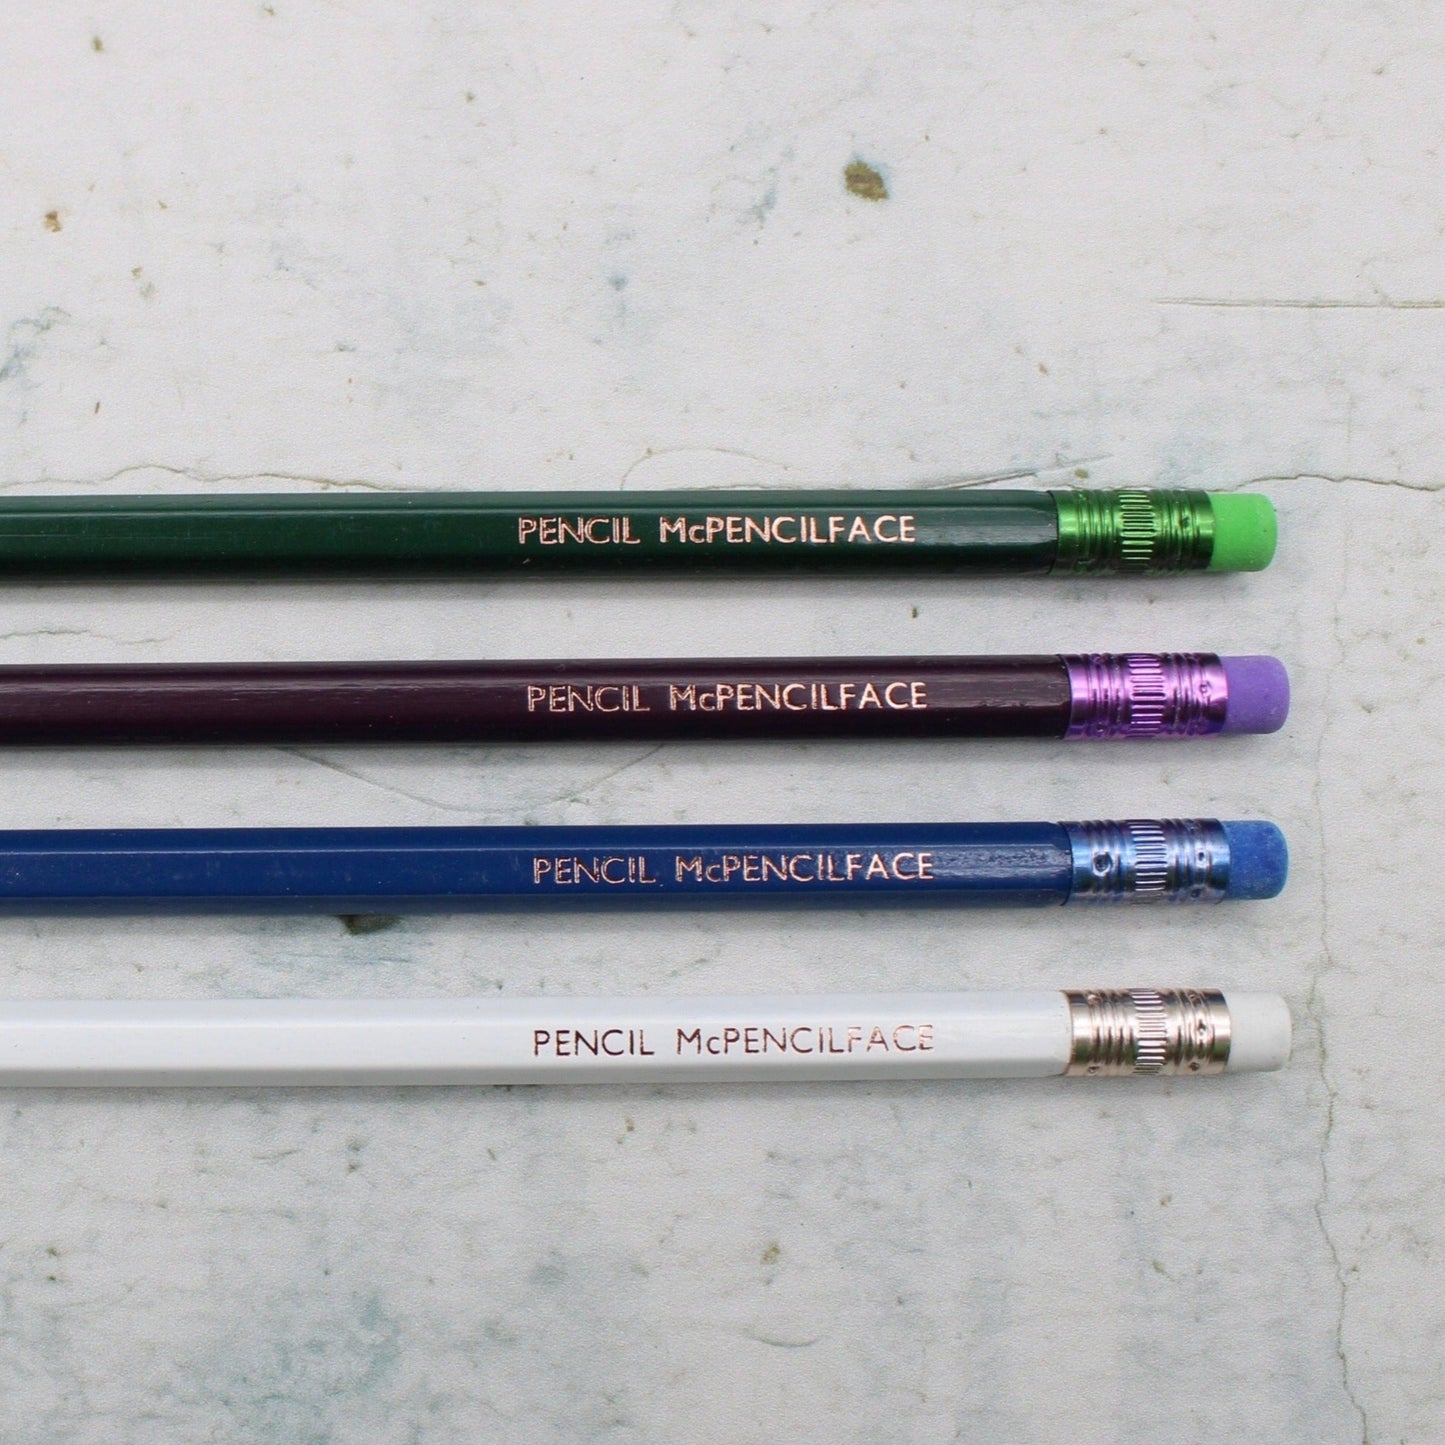 Printed Pencil - McPencilface Pencils